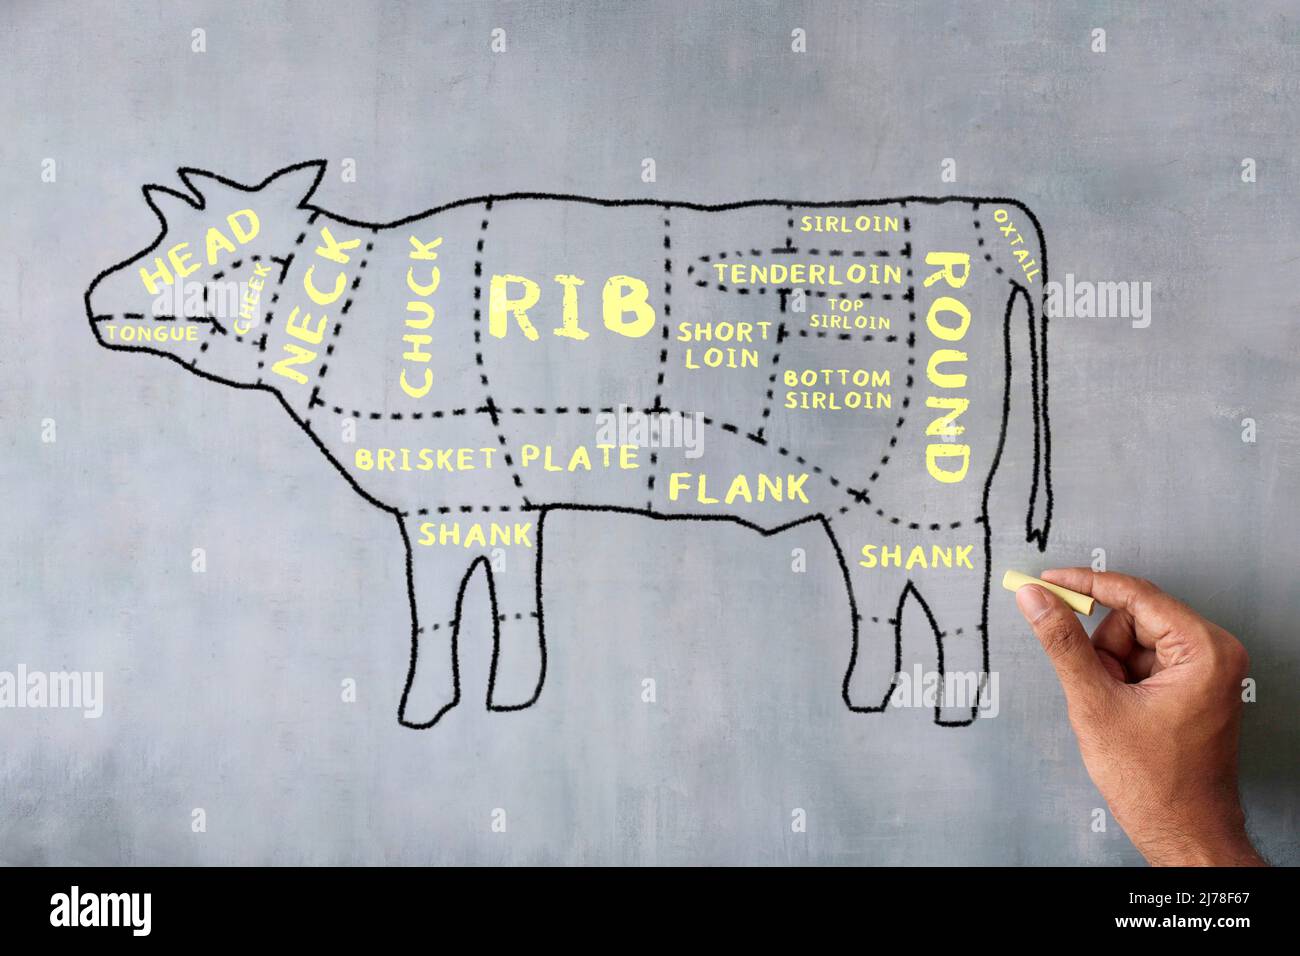 Imagen dibujada a mano del diagrama de cortes de carne de carnicero en la pizarra. Foto de stock